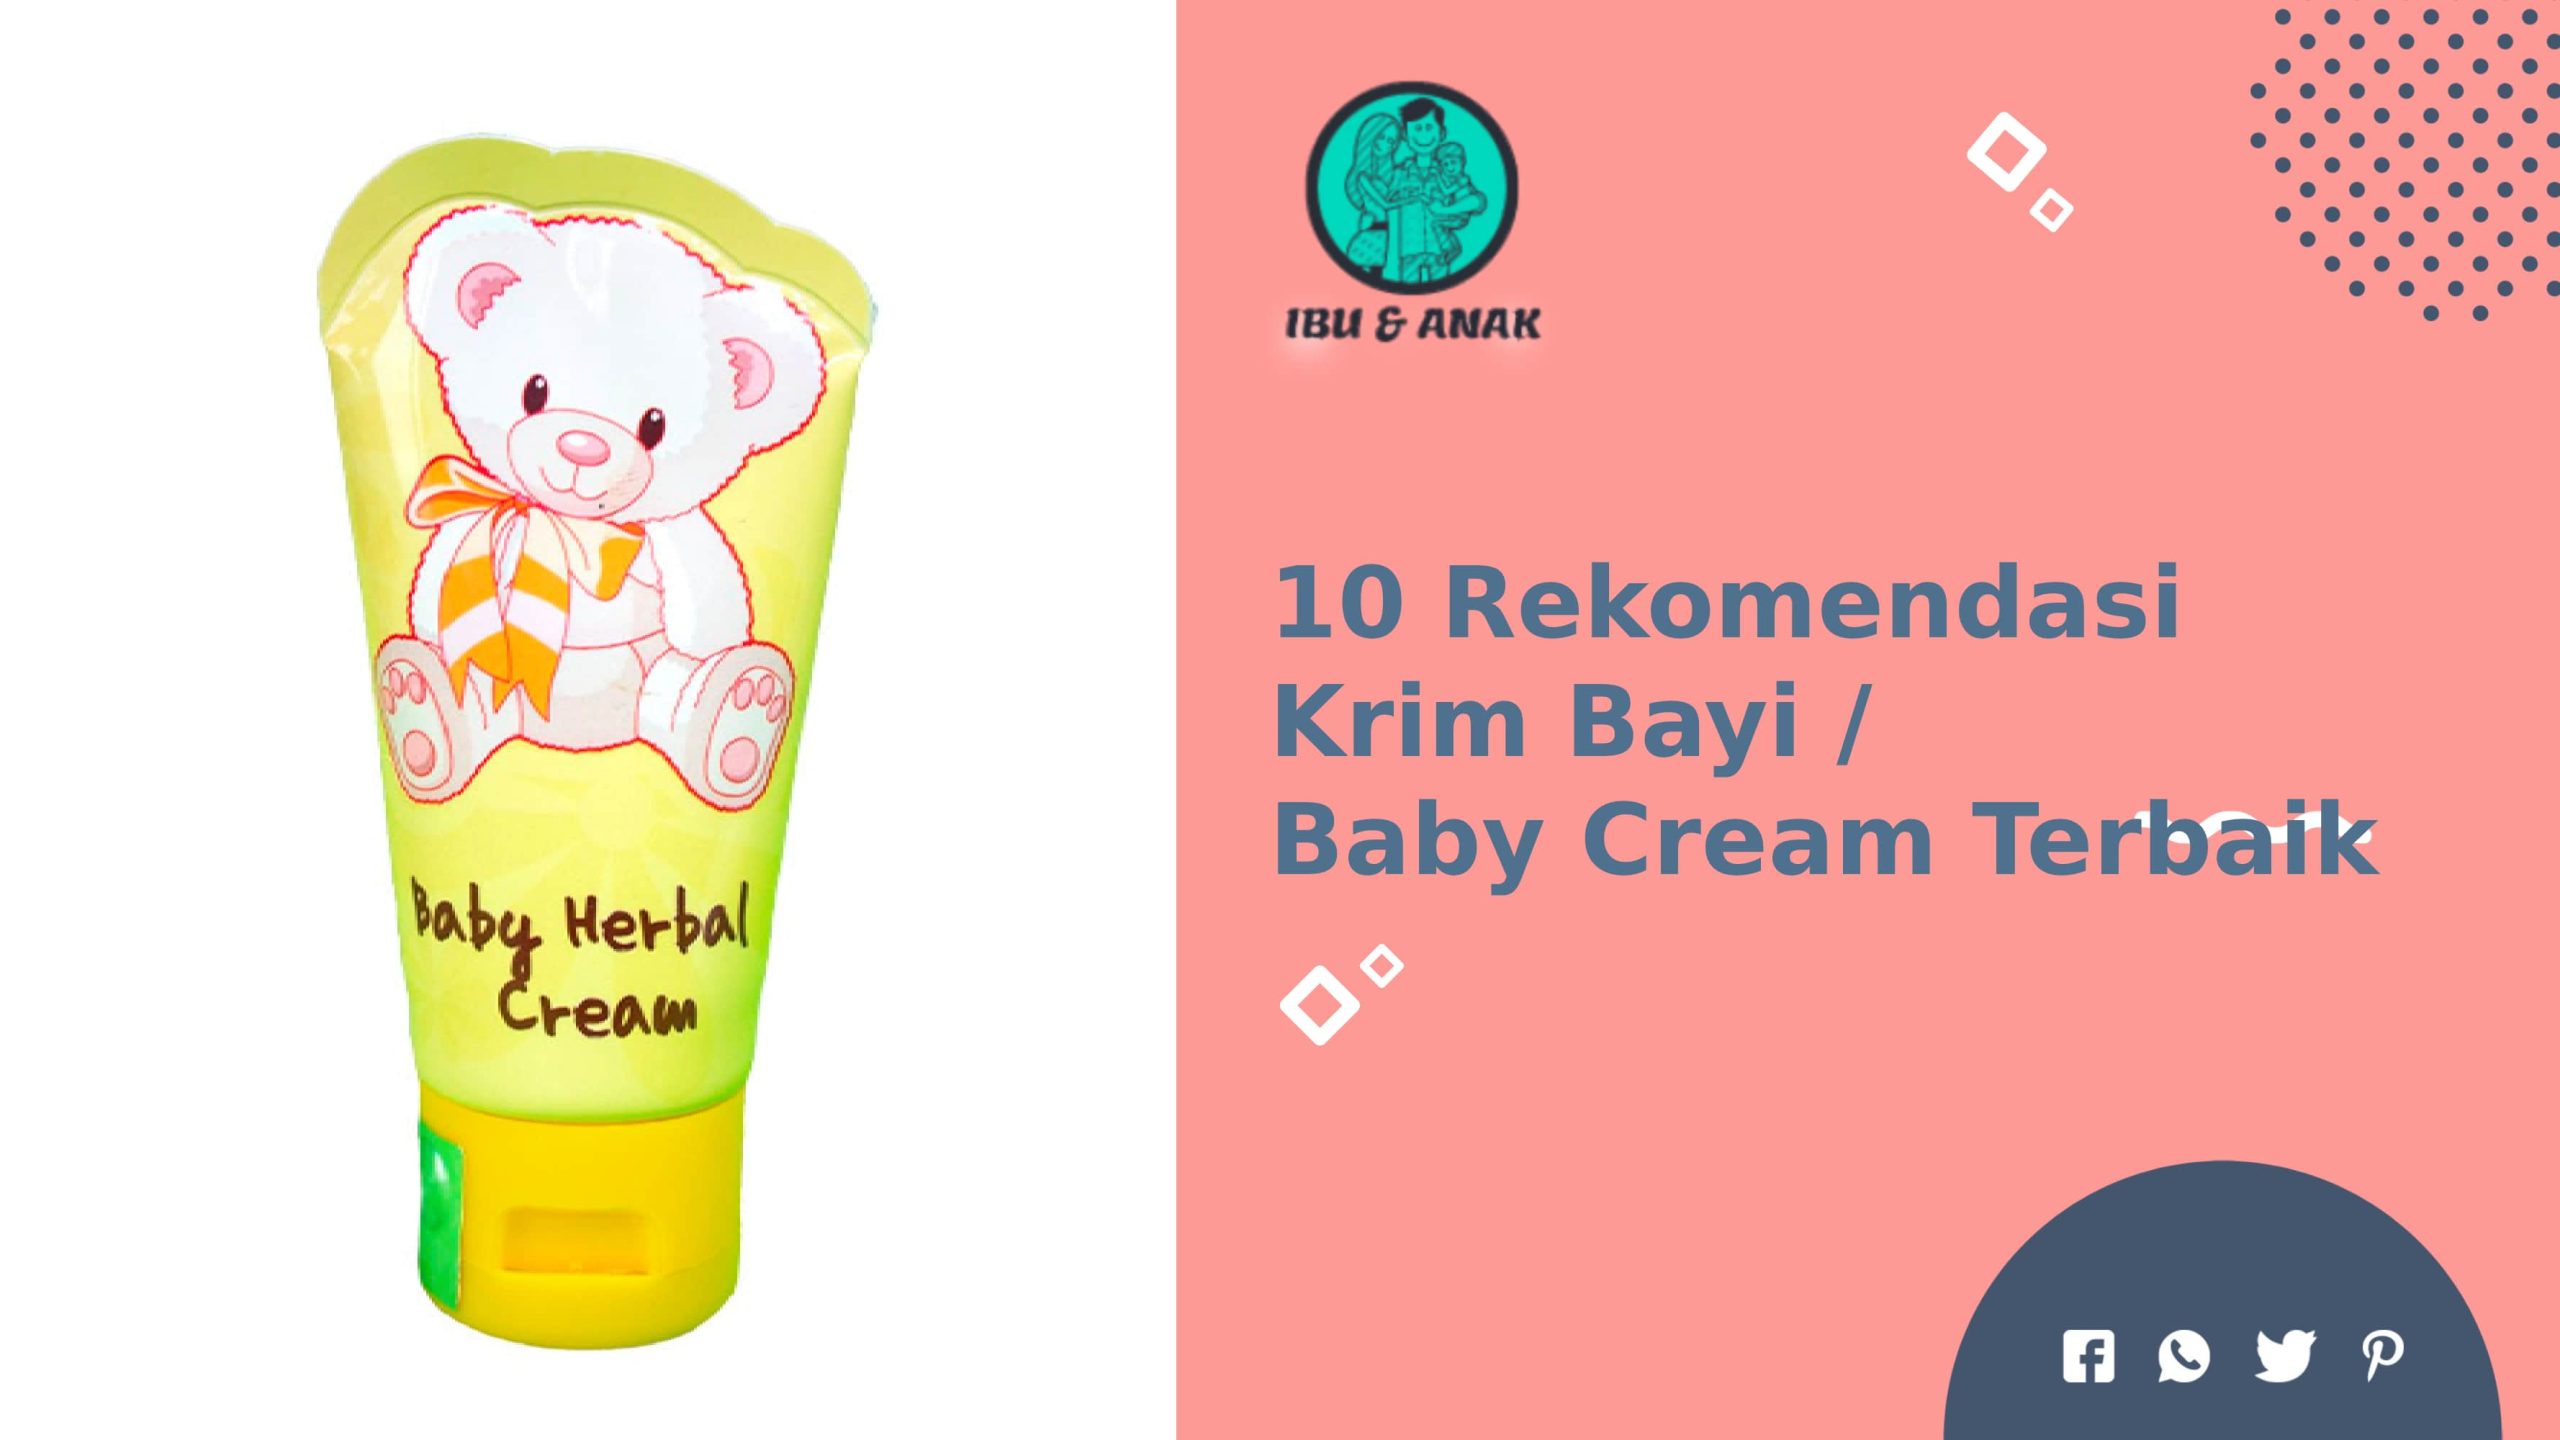 Rekomendasi Krim Bayi / Baby Cream